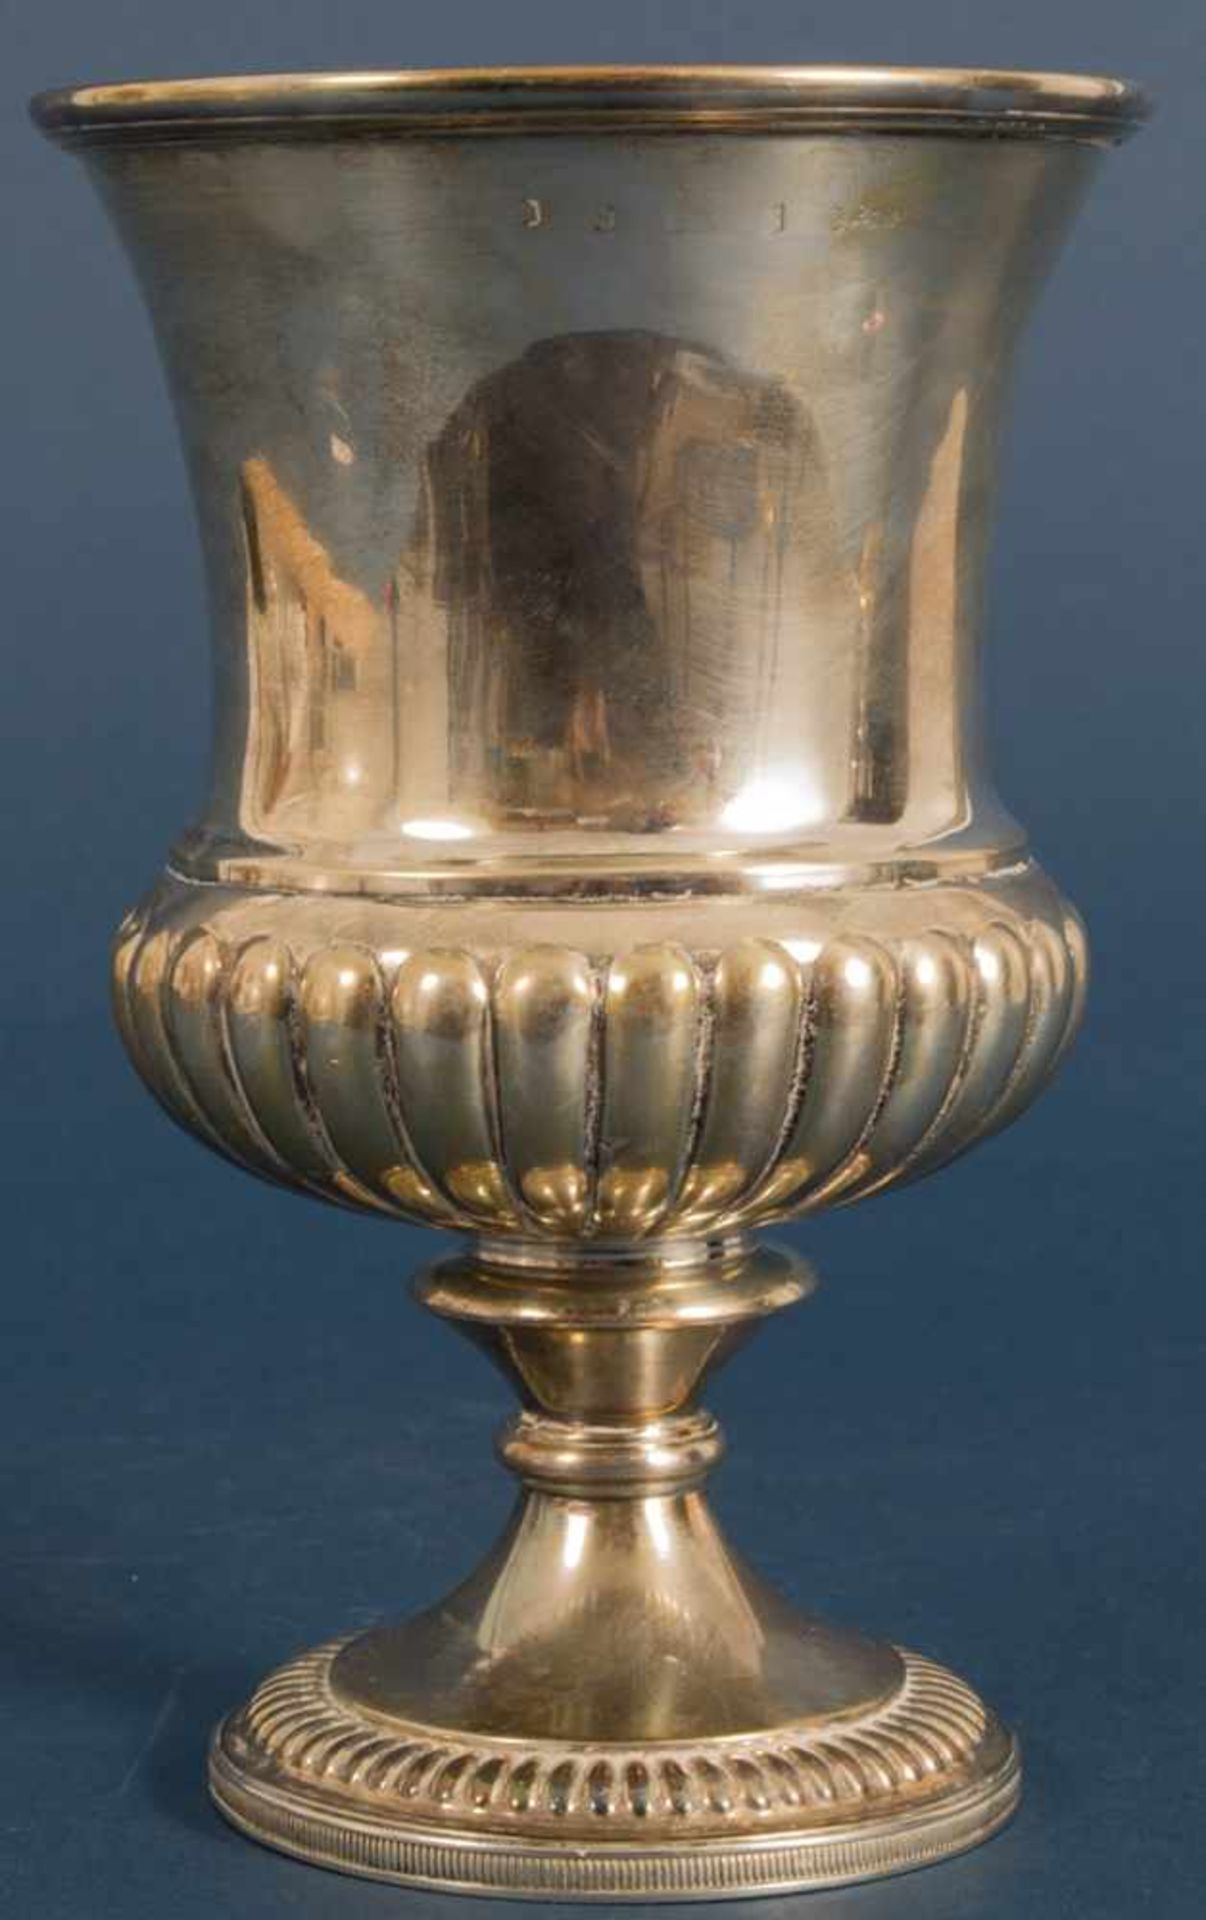 Schwerer, englischer Pokal von 1946, klassische, georgianische Formgebung, Gravuren weitesgehend